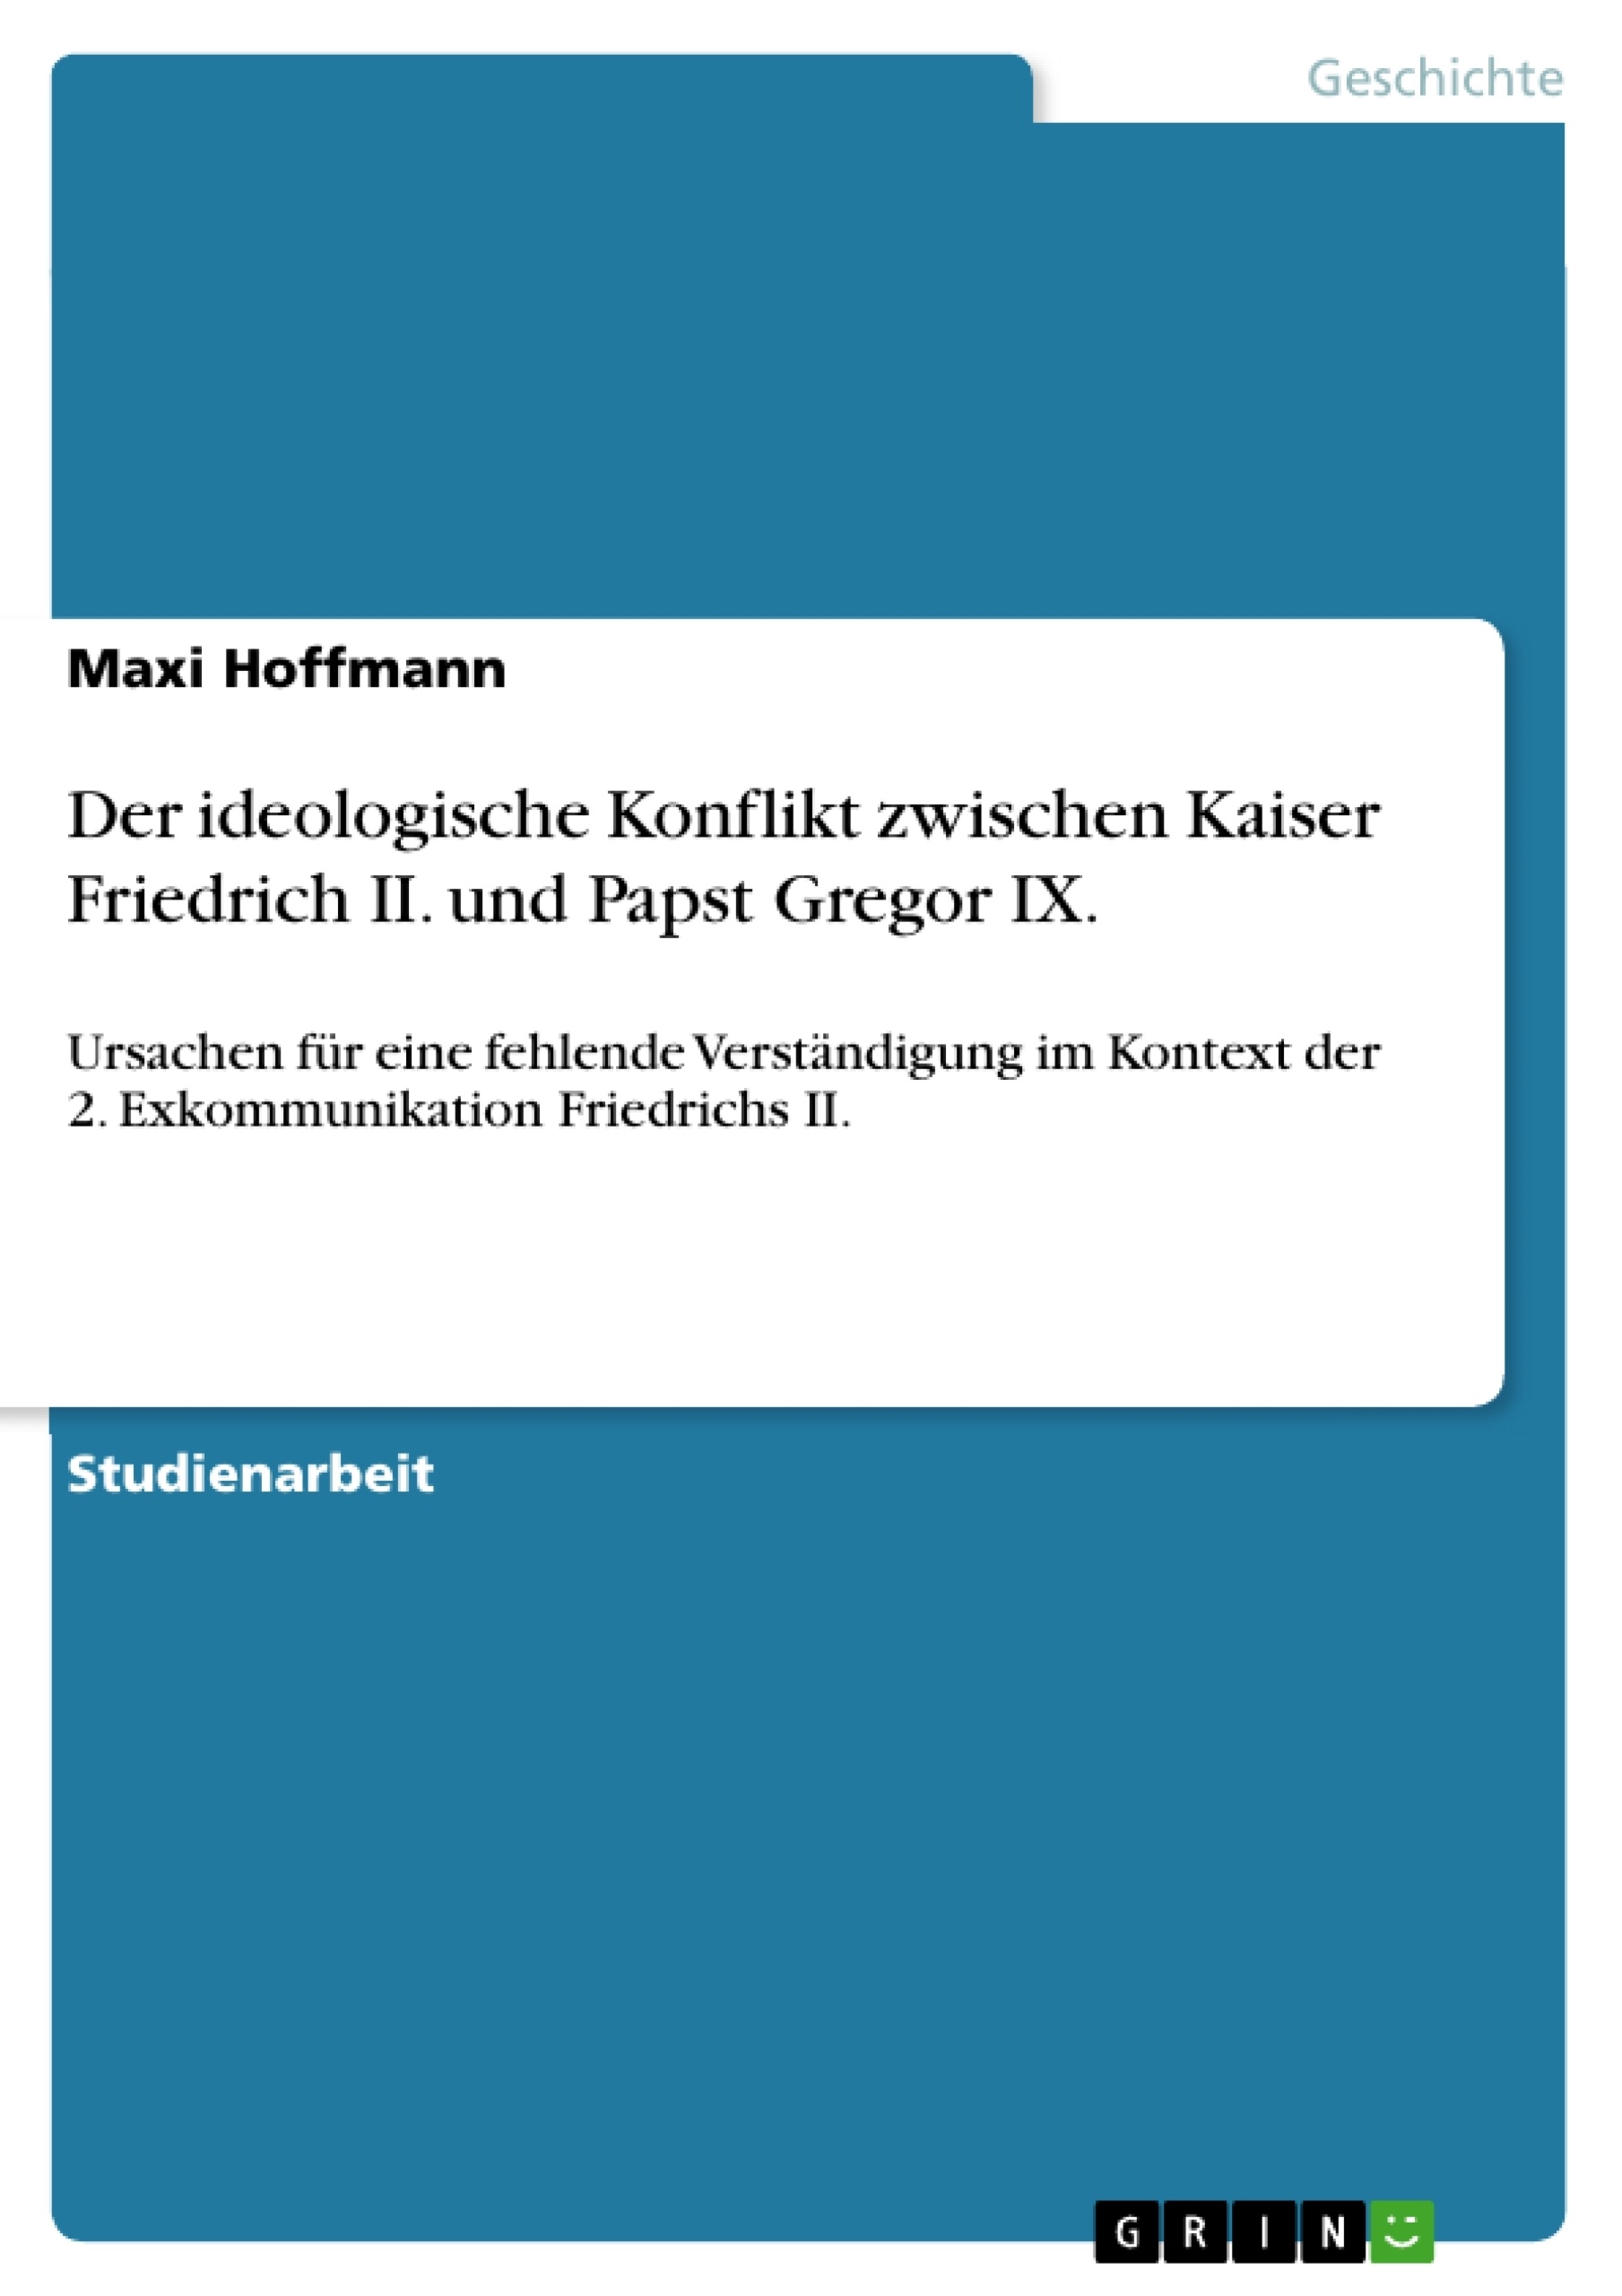 Title: Der ideologische Konflikt zwischen Kaiser Friedrich II. und Papst Gregor IX.